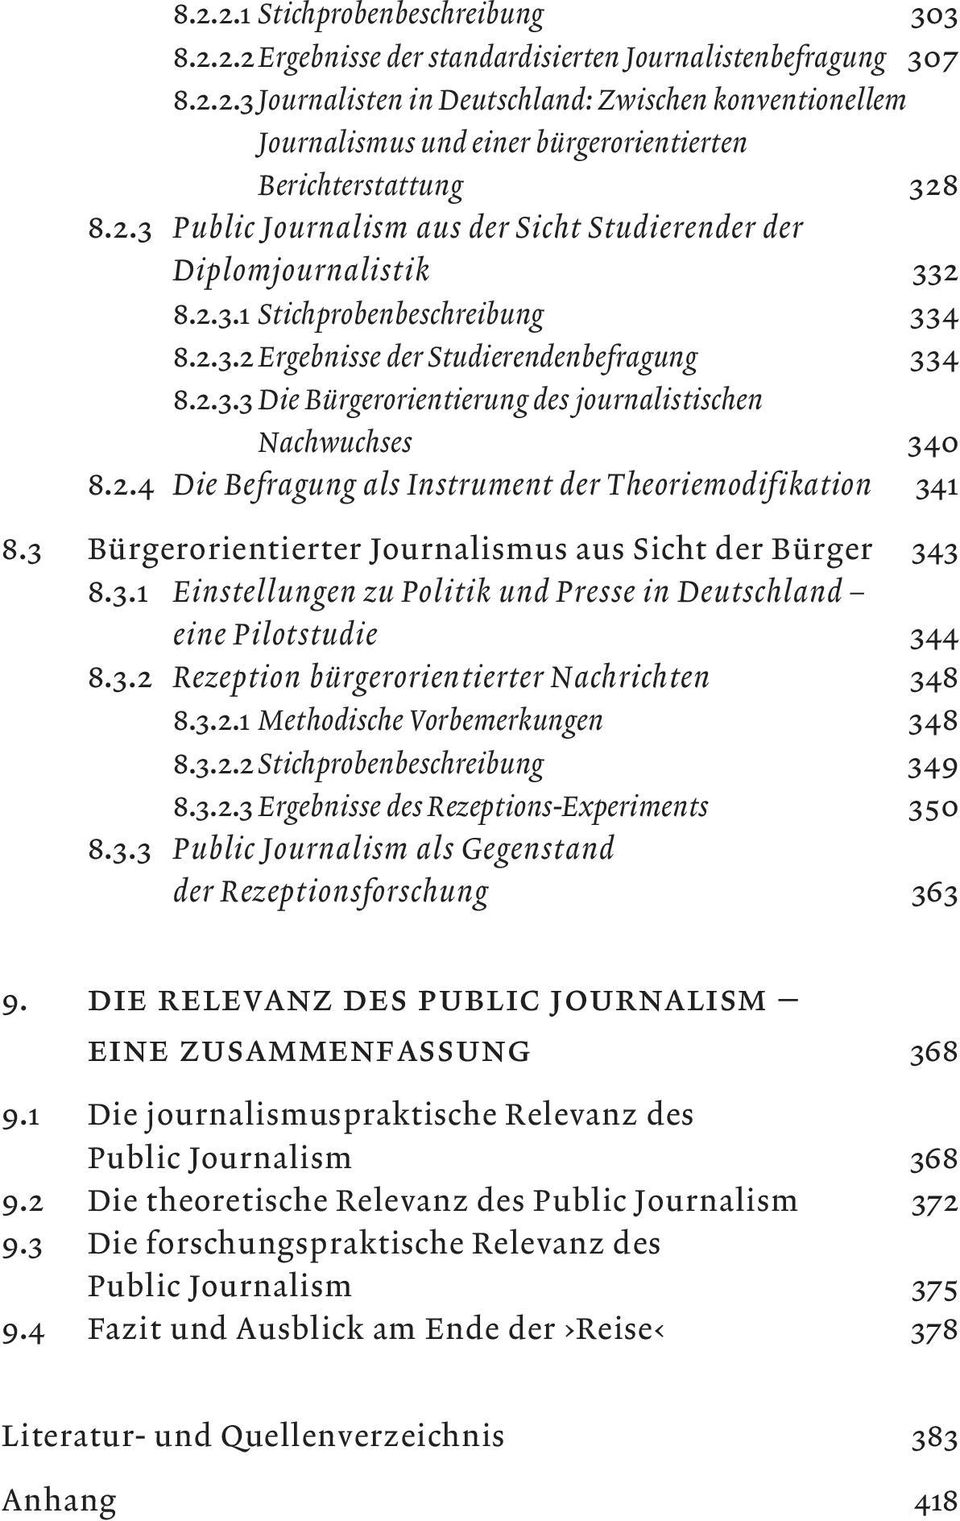 2.4 Die Befragung als Instrument der Theoriemodifikation 341 8.3 Bürgerorientierter Journalismus aus Sicht der Bürger 343 8.3.1 Einstellungen zu Politik und Presse in Deutschland eine Pilotstudie 344 8.